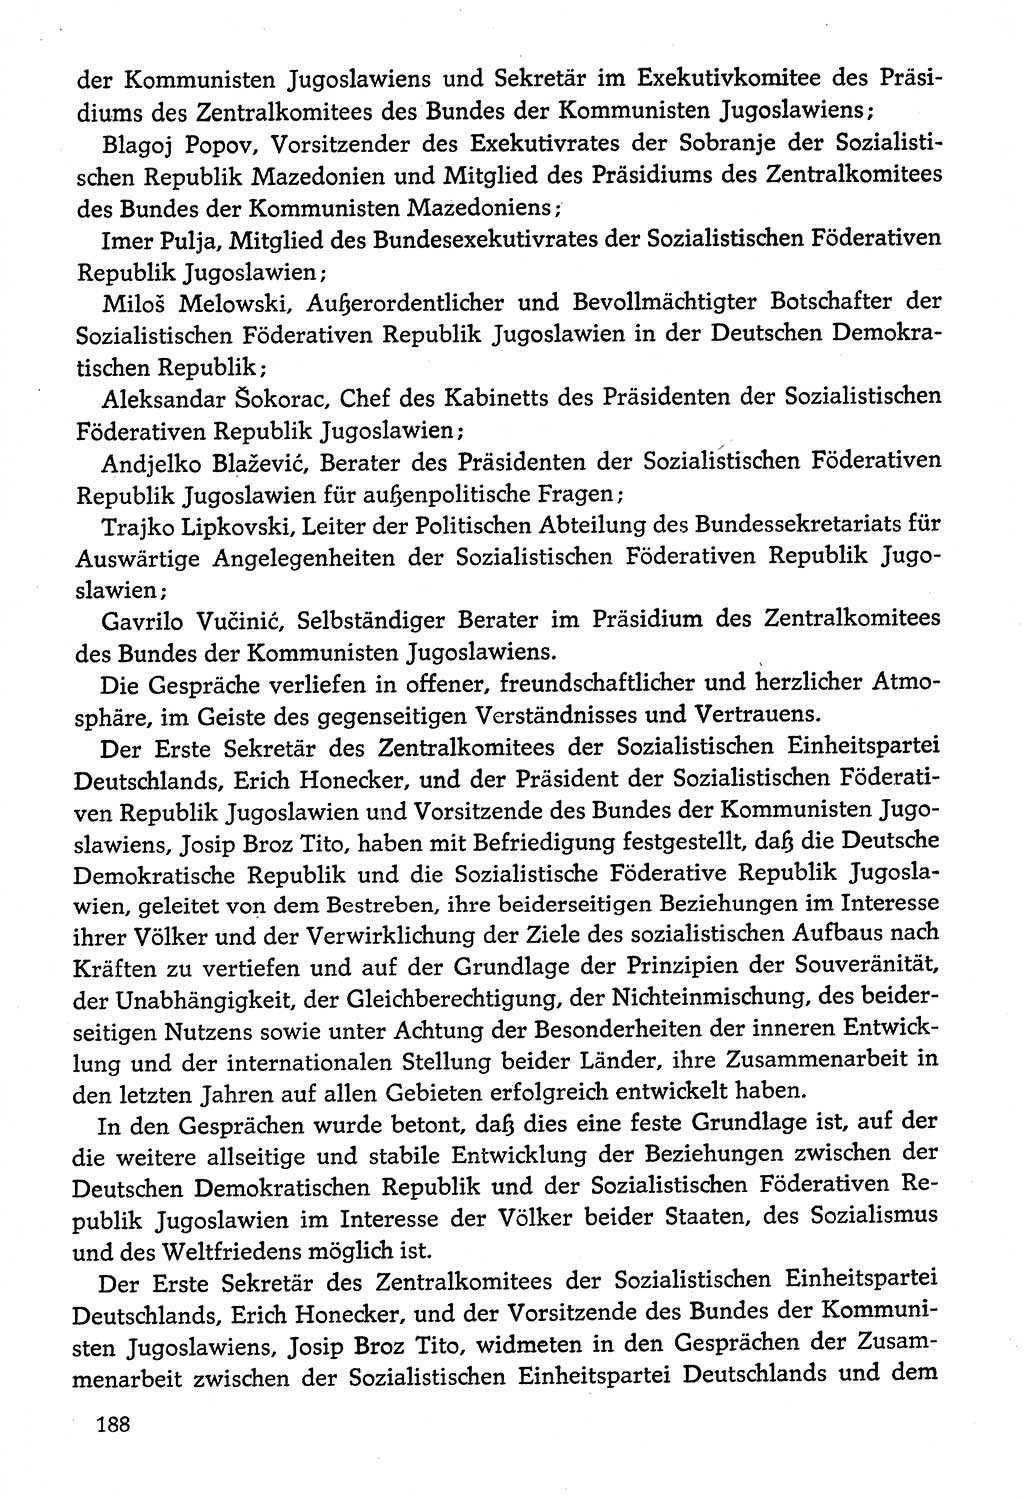 Dokumente der Sozialistischen Einheitspartei Deutschlands (SED) [Deutsche Demokratische Republik (DDR)] 1974-1975, Seite 188 (Dok. SED DDR 1978, Bd. ⅩⅤ, S. 188)